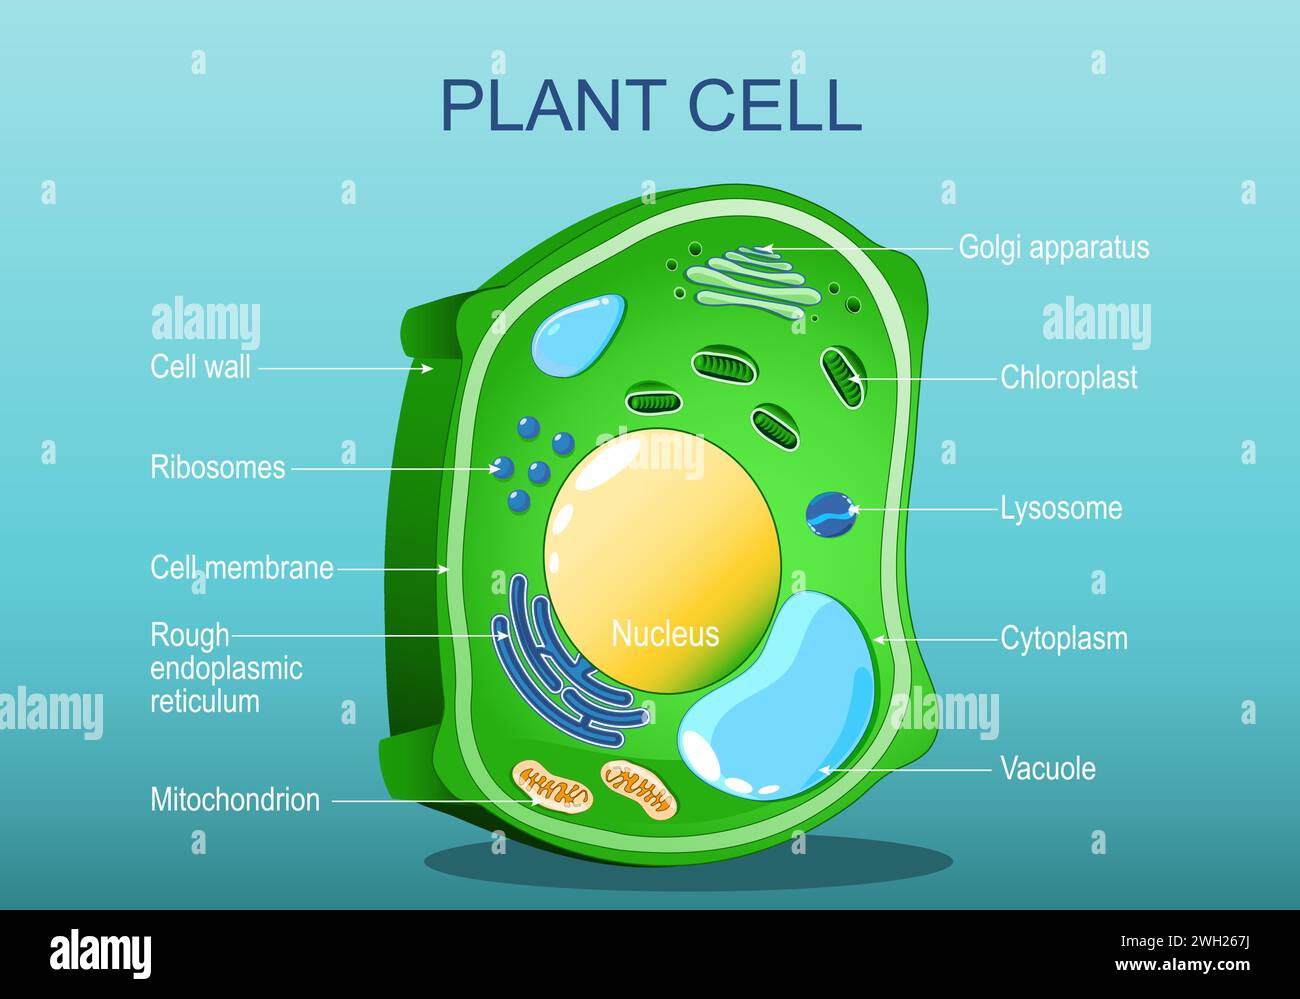 Zellstruktur der Pflanze. Zur Anatomie einer Baumblattzelle. Grüne Pflanze. Abbildung des isometrischen flachen Vektors Stock Vektor